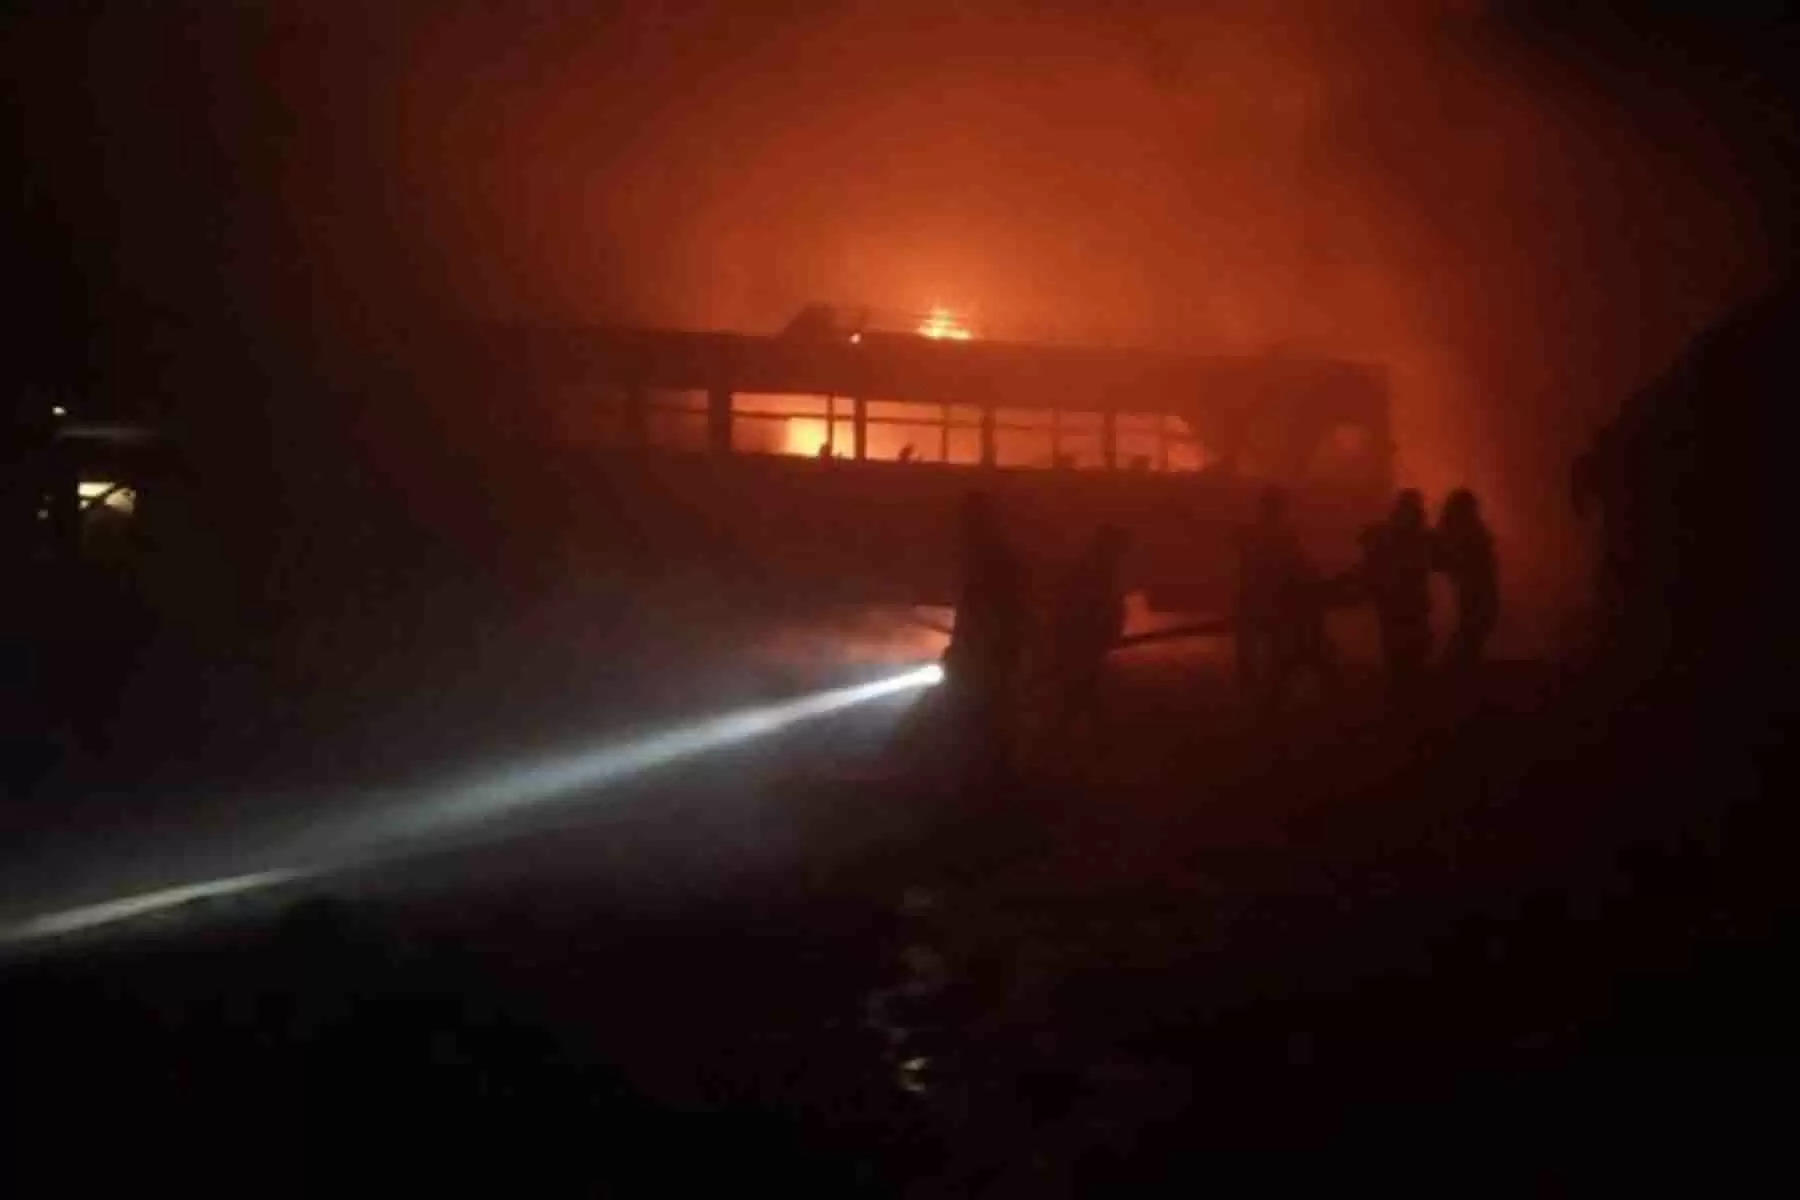  हिमाचल प्रदेश की राजधानी शिमला में हिमाचल पथ परिवहन निगम की वर्कशॉप में आग भड़क गई। आग की चपेट में आने से एक पुरानी बस जलकर राख हो गई है। घटना शिमला के ढली में की है। यहां मंगलवार रात करीब 9:30 बजे हिमाचल पथ परिवहन निगम (HRTC) के शिमला ग्रामीण डिपो की वर्कशॉप में अचानक आग भड़क गई। आग लगने से वर्कशॉप में खड़ी परिवहन निगम की एक पुरानी बस जलकर राख हो गई।